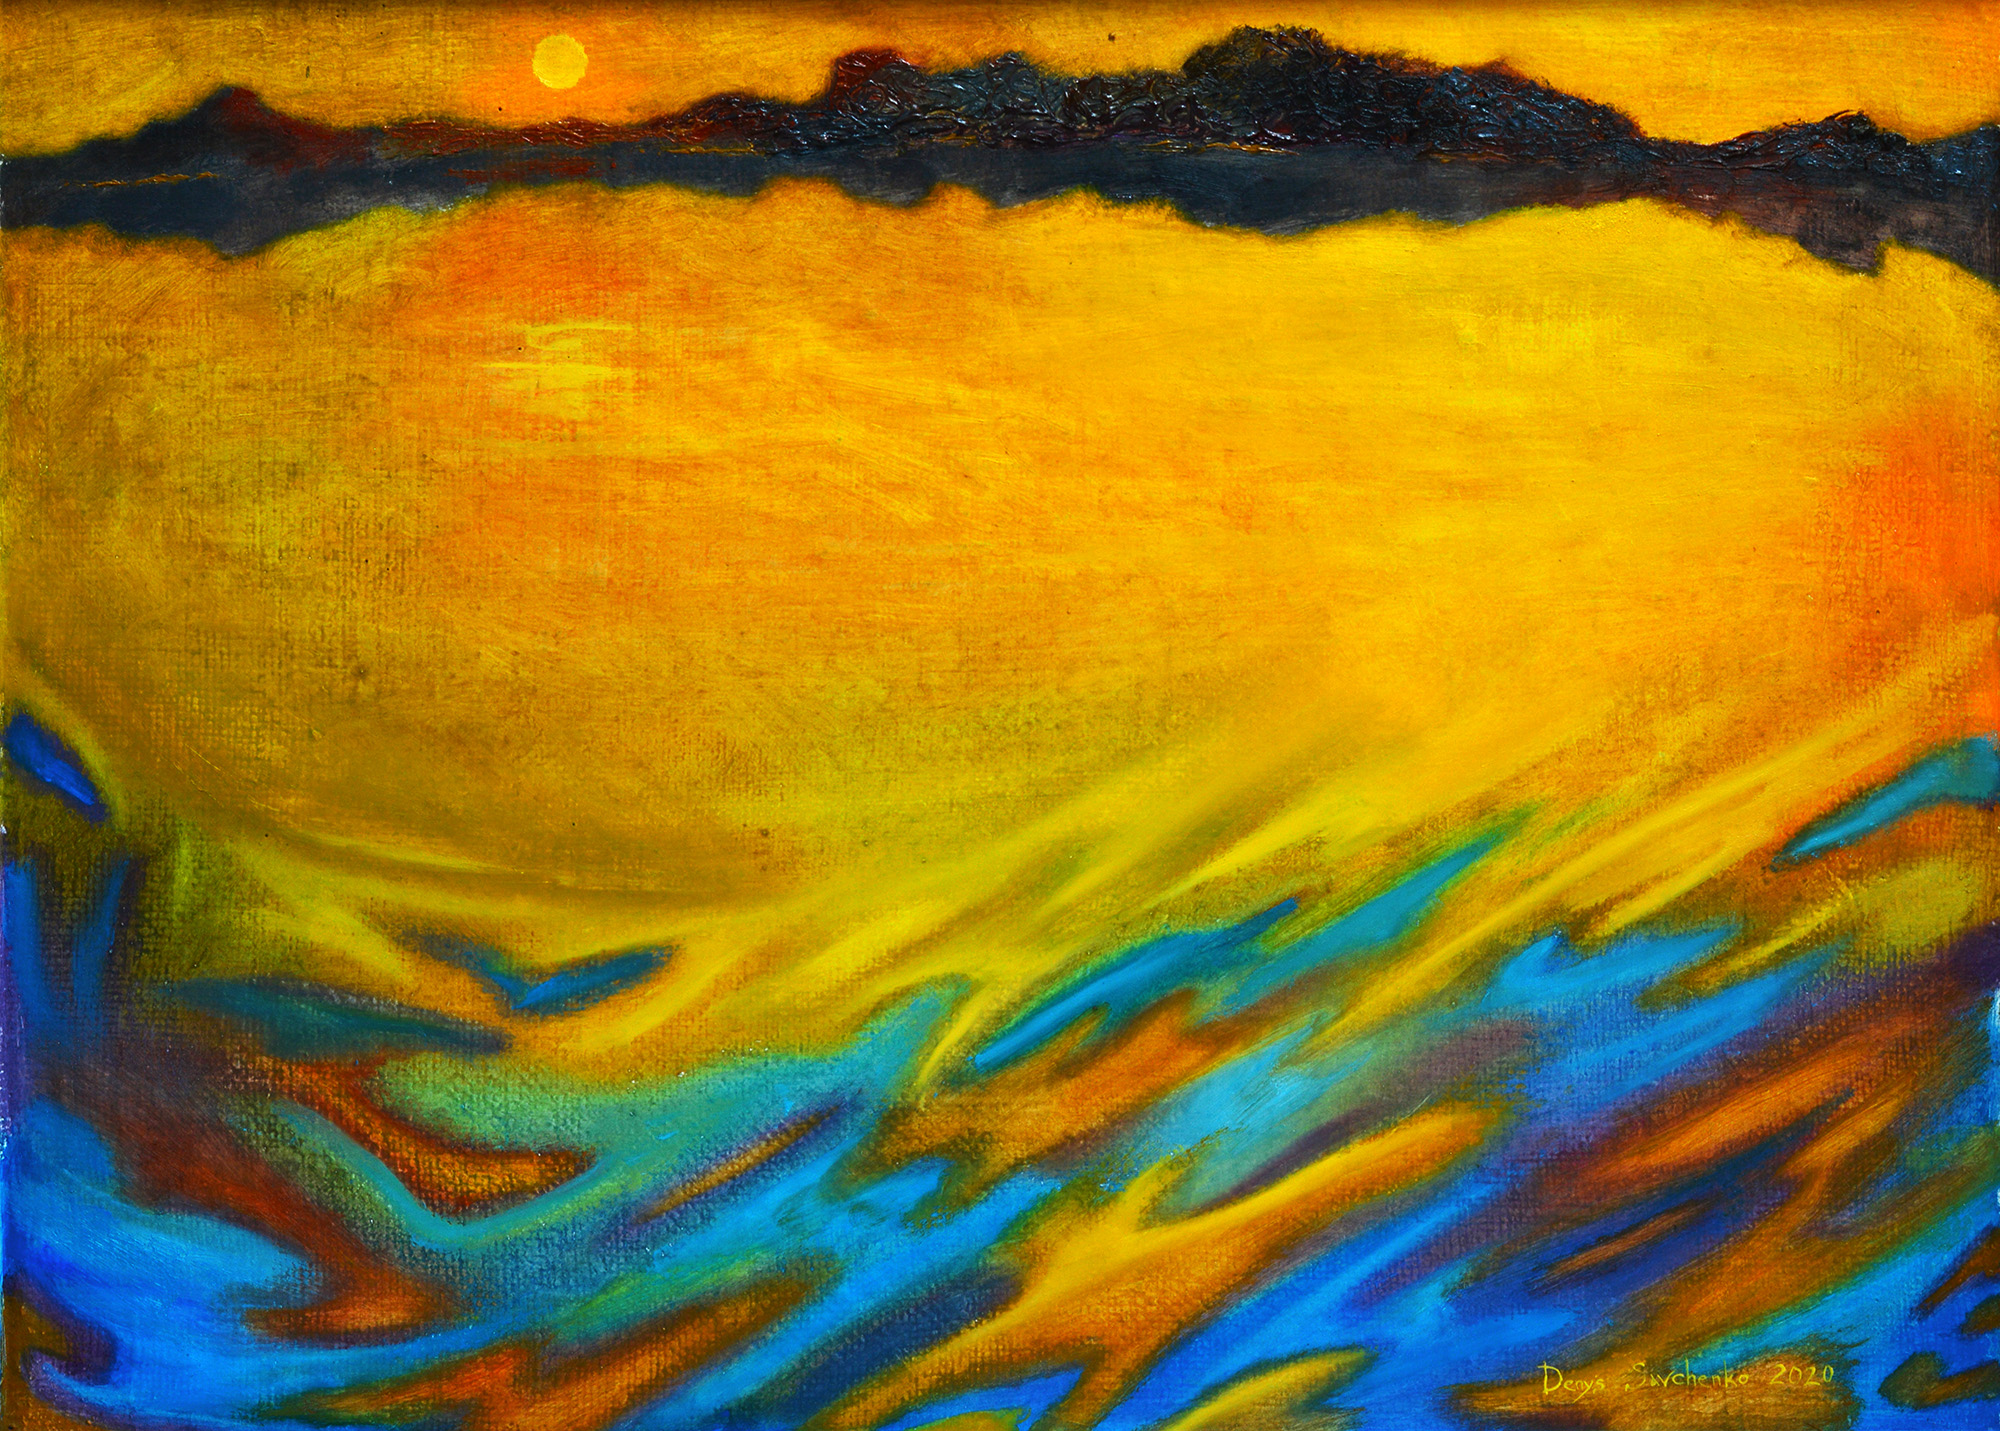 Denys Savchenko. Oil painting. Reflexes on water.